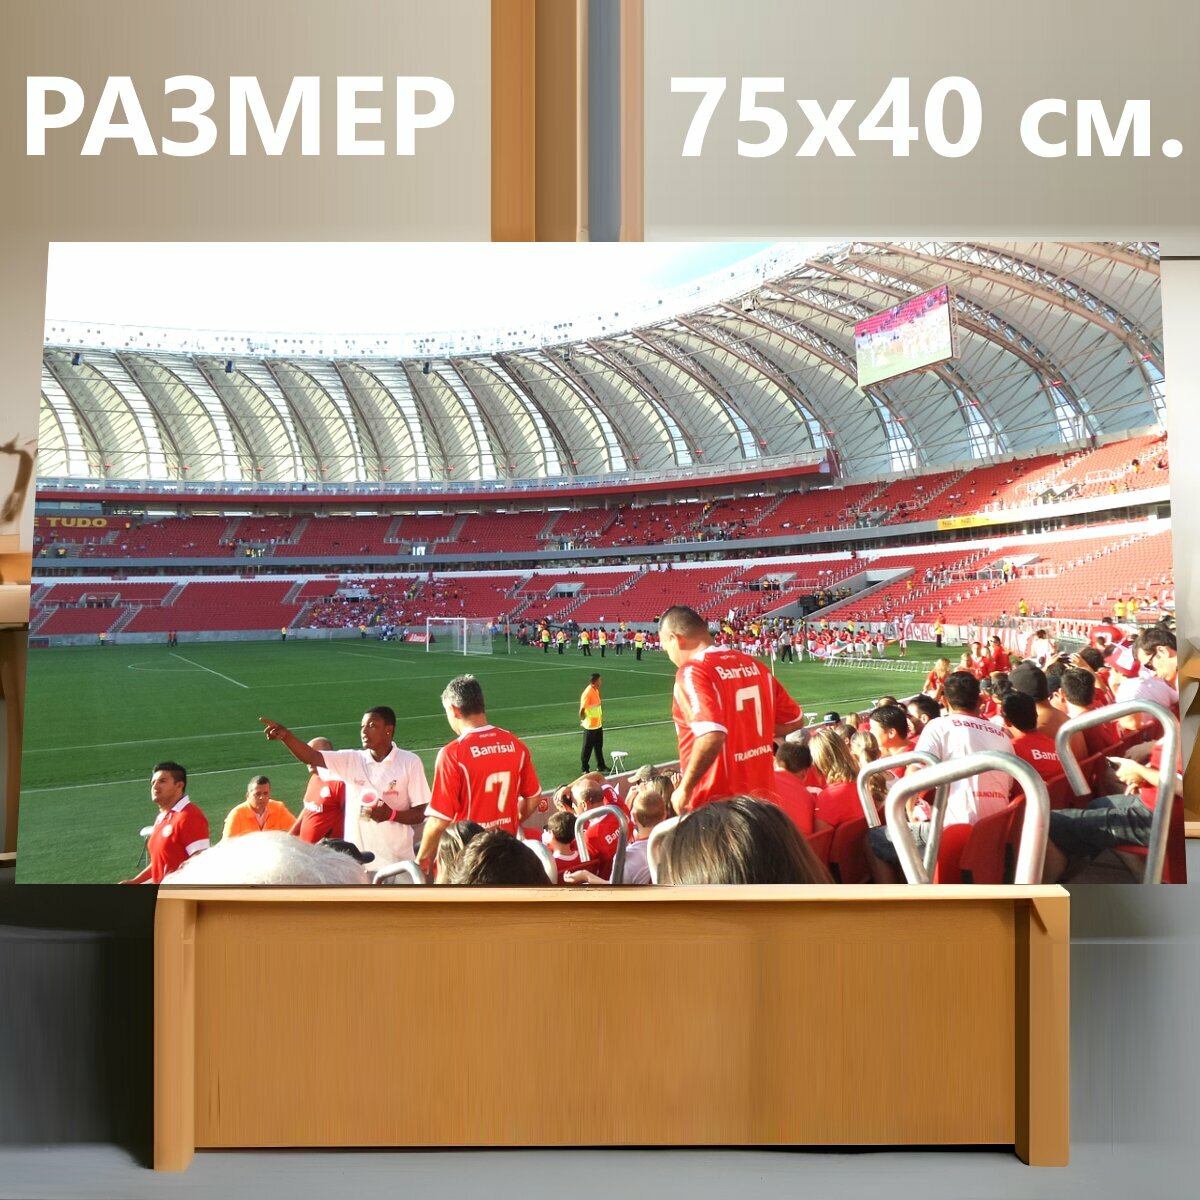 Картина на холсте "Футбольный стадион, футбол, футбольное поле" на подрамнике 75х40 см. для интерьера